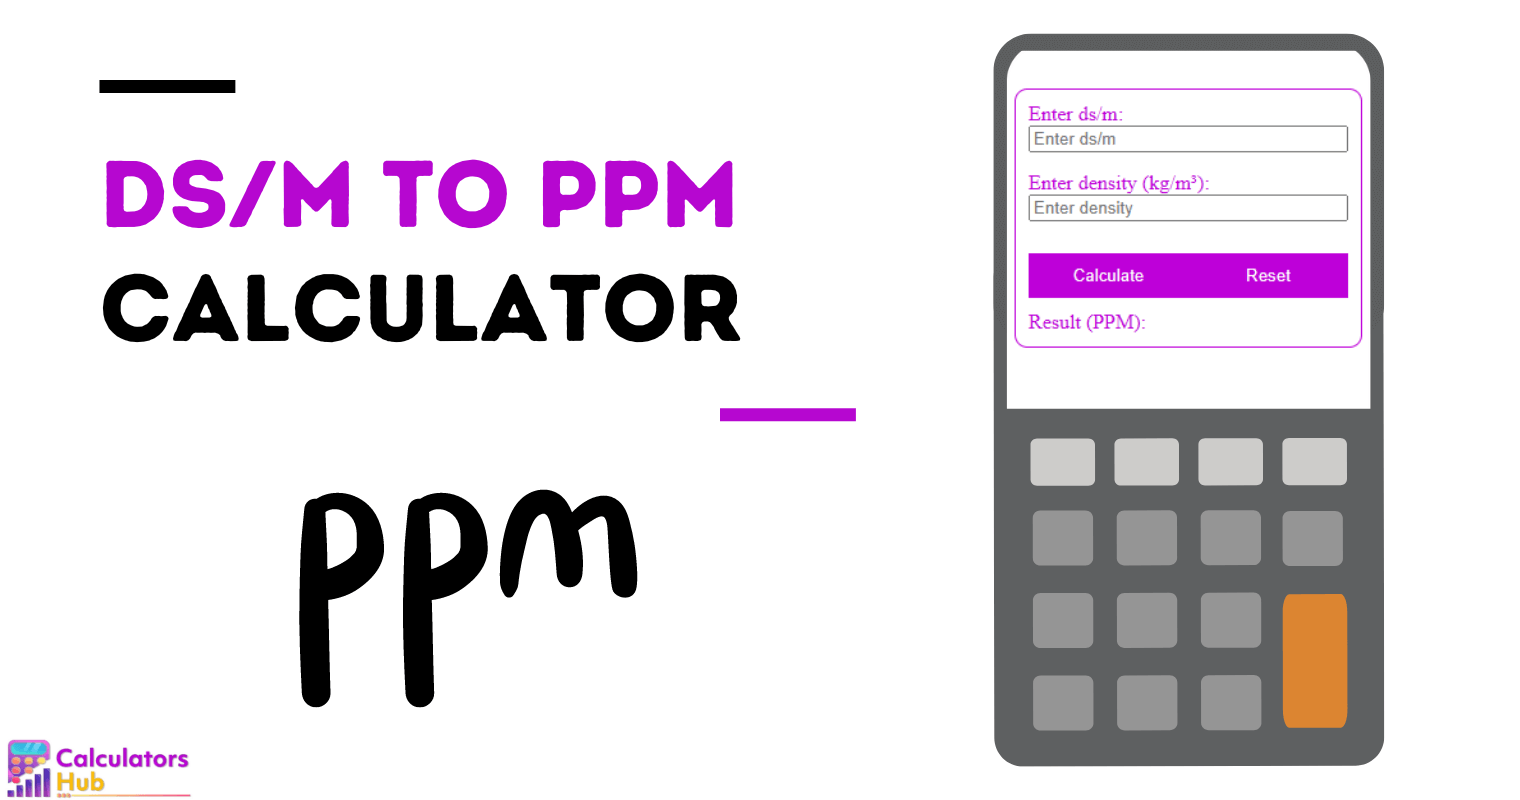 Calculadora de ds/m para PPM